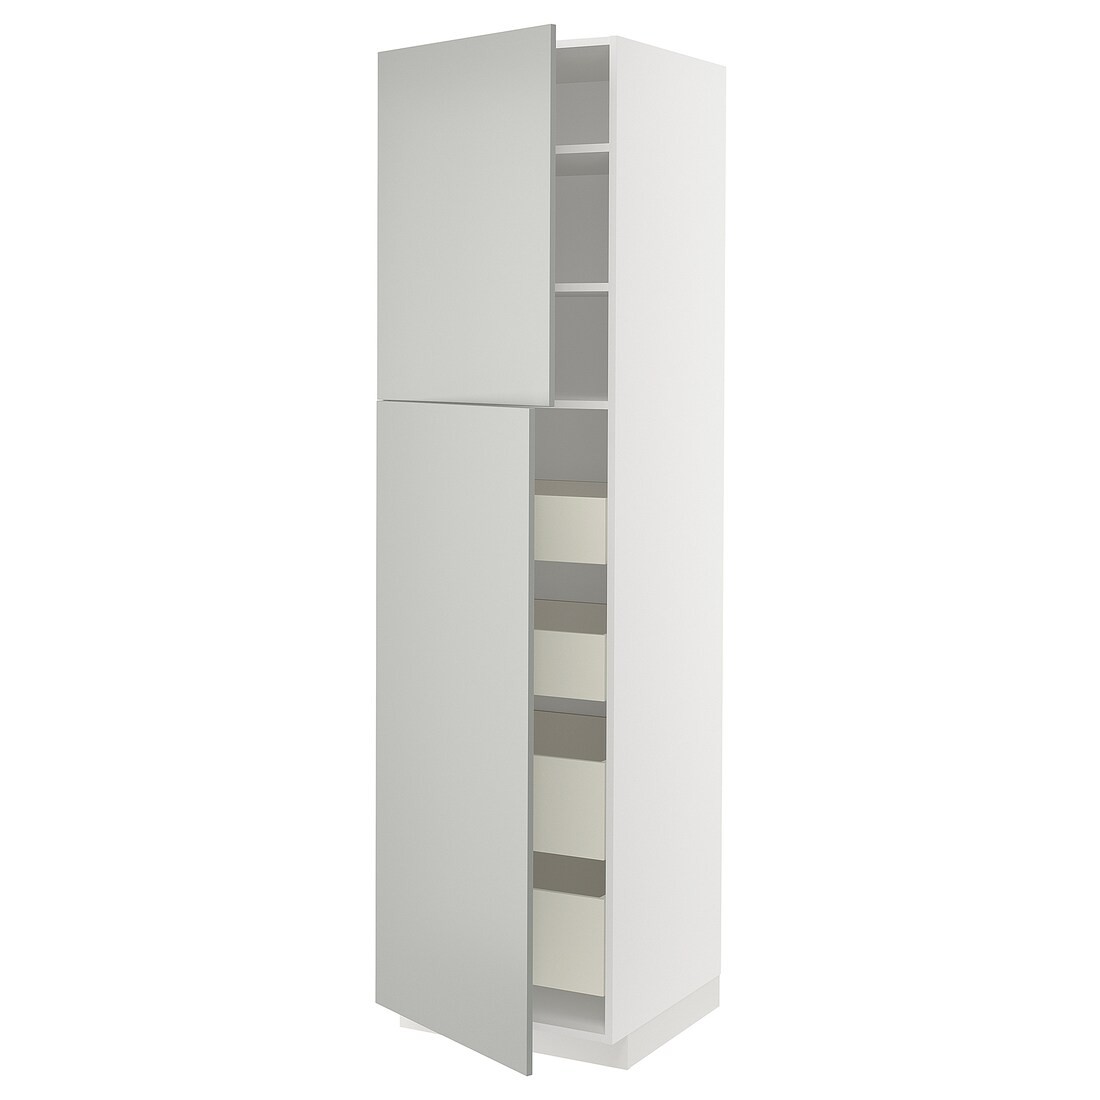 METOD / MAXIMERA Шкаф высокий 2 двери / 4 ящика, белый / Хавсторп светло-серый, 60x60x220 см